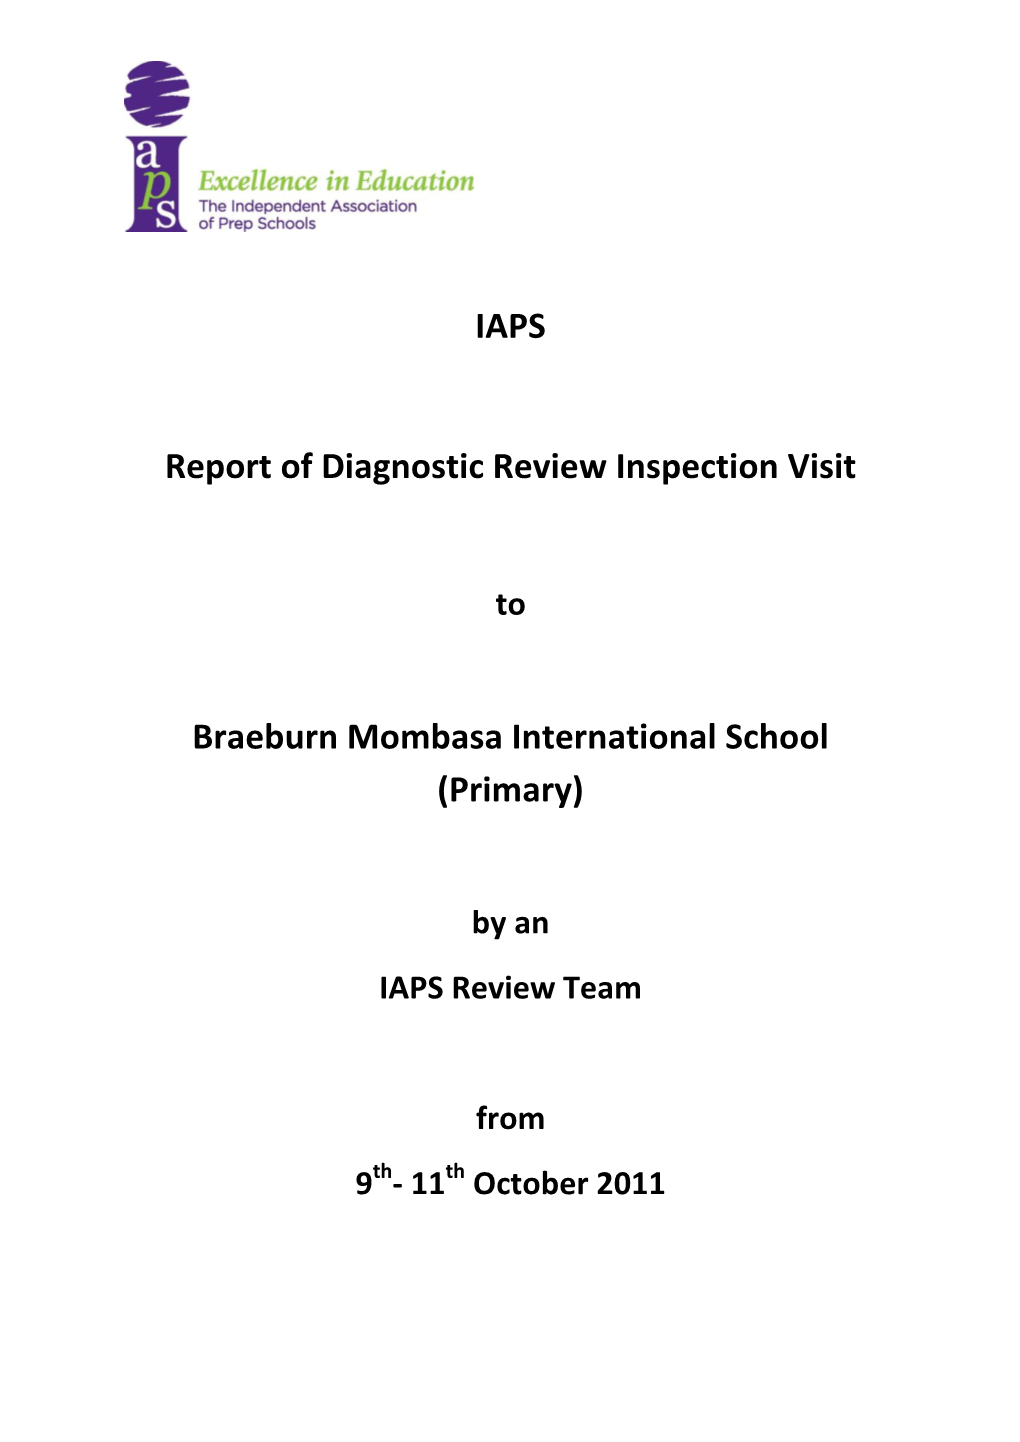 Mombasa IAPS Review Report October 2011